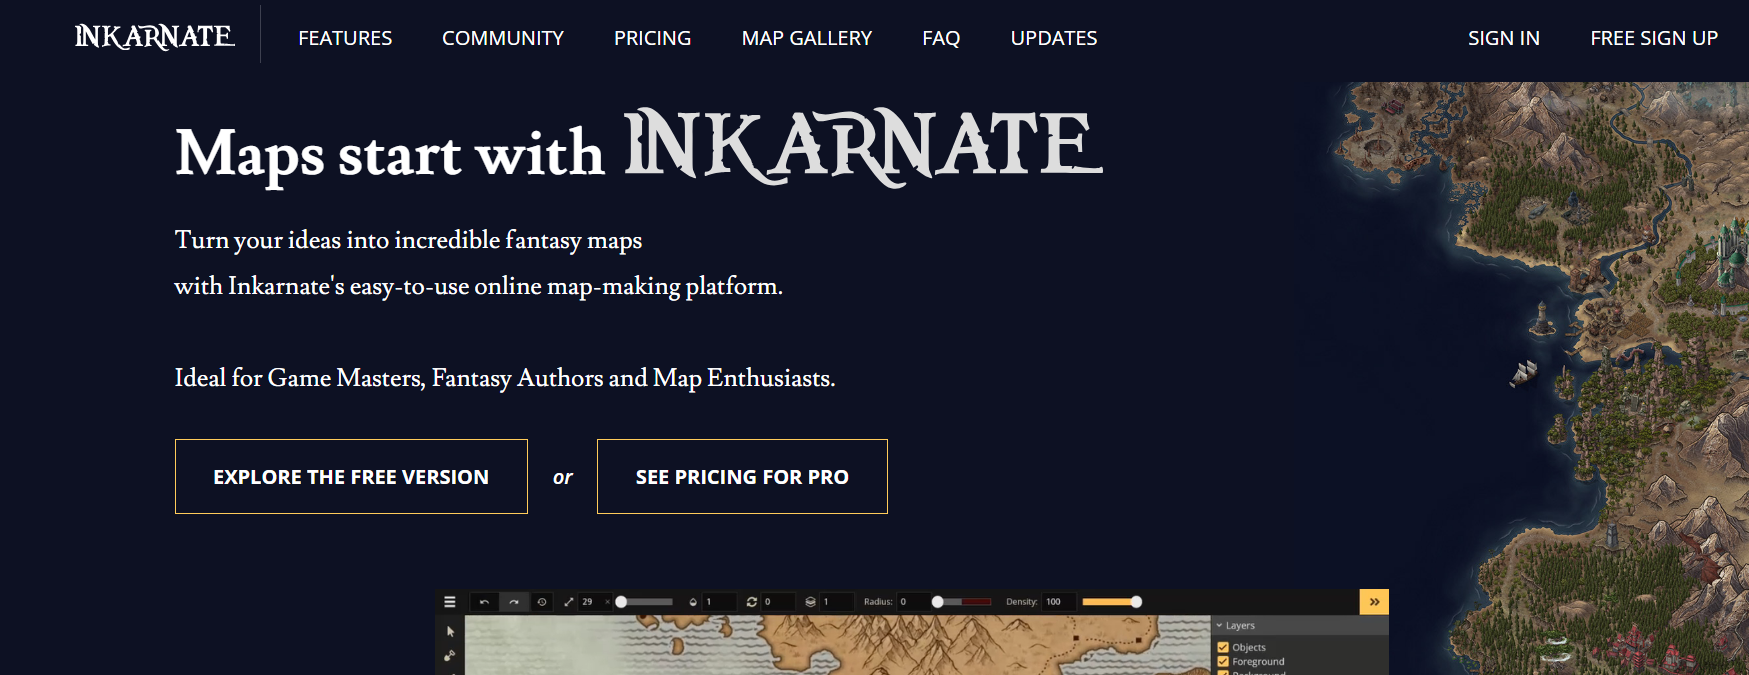 Inkarnate Generador de Mapas de Fantasía